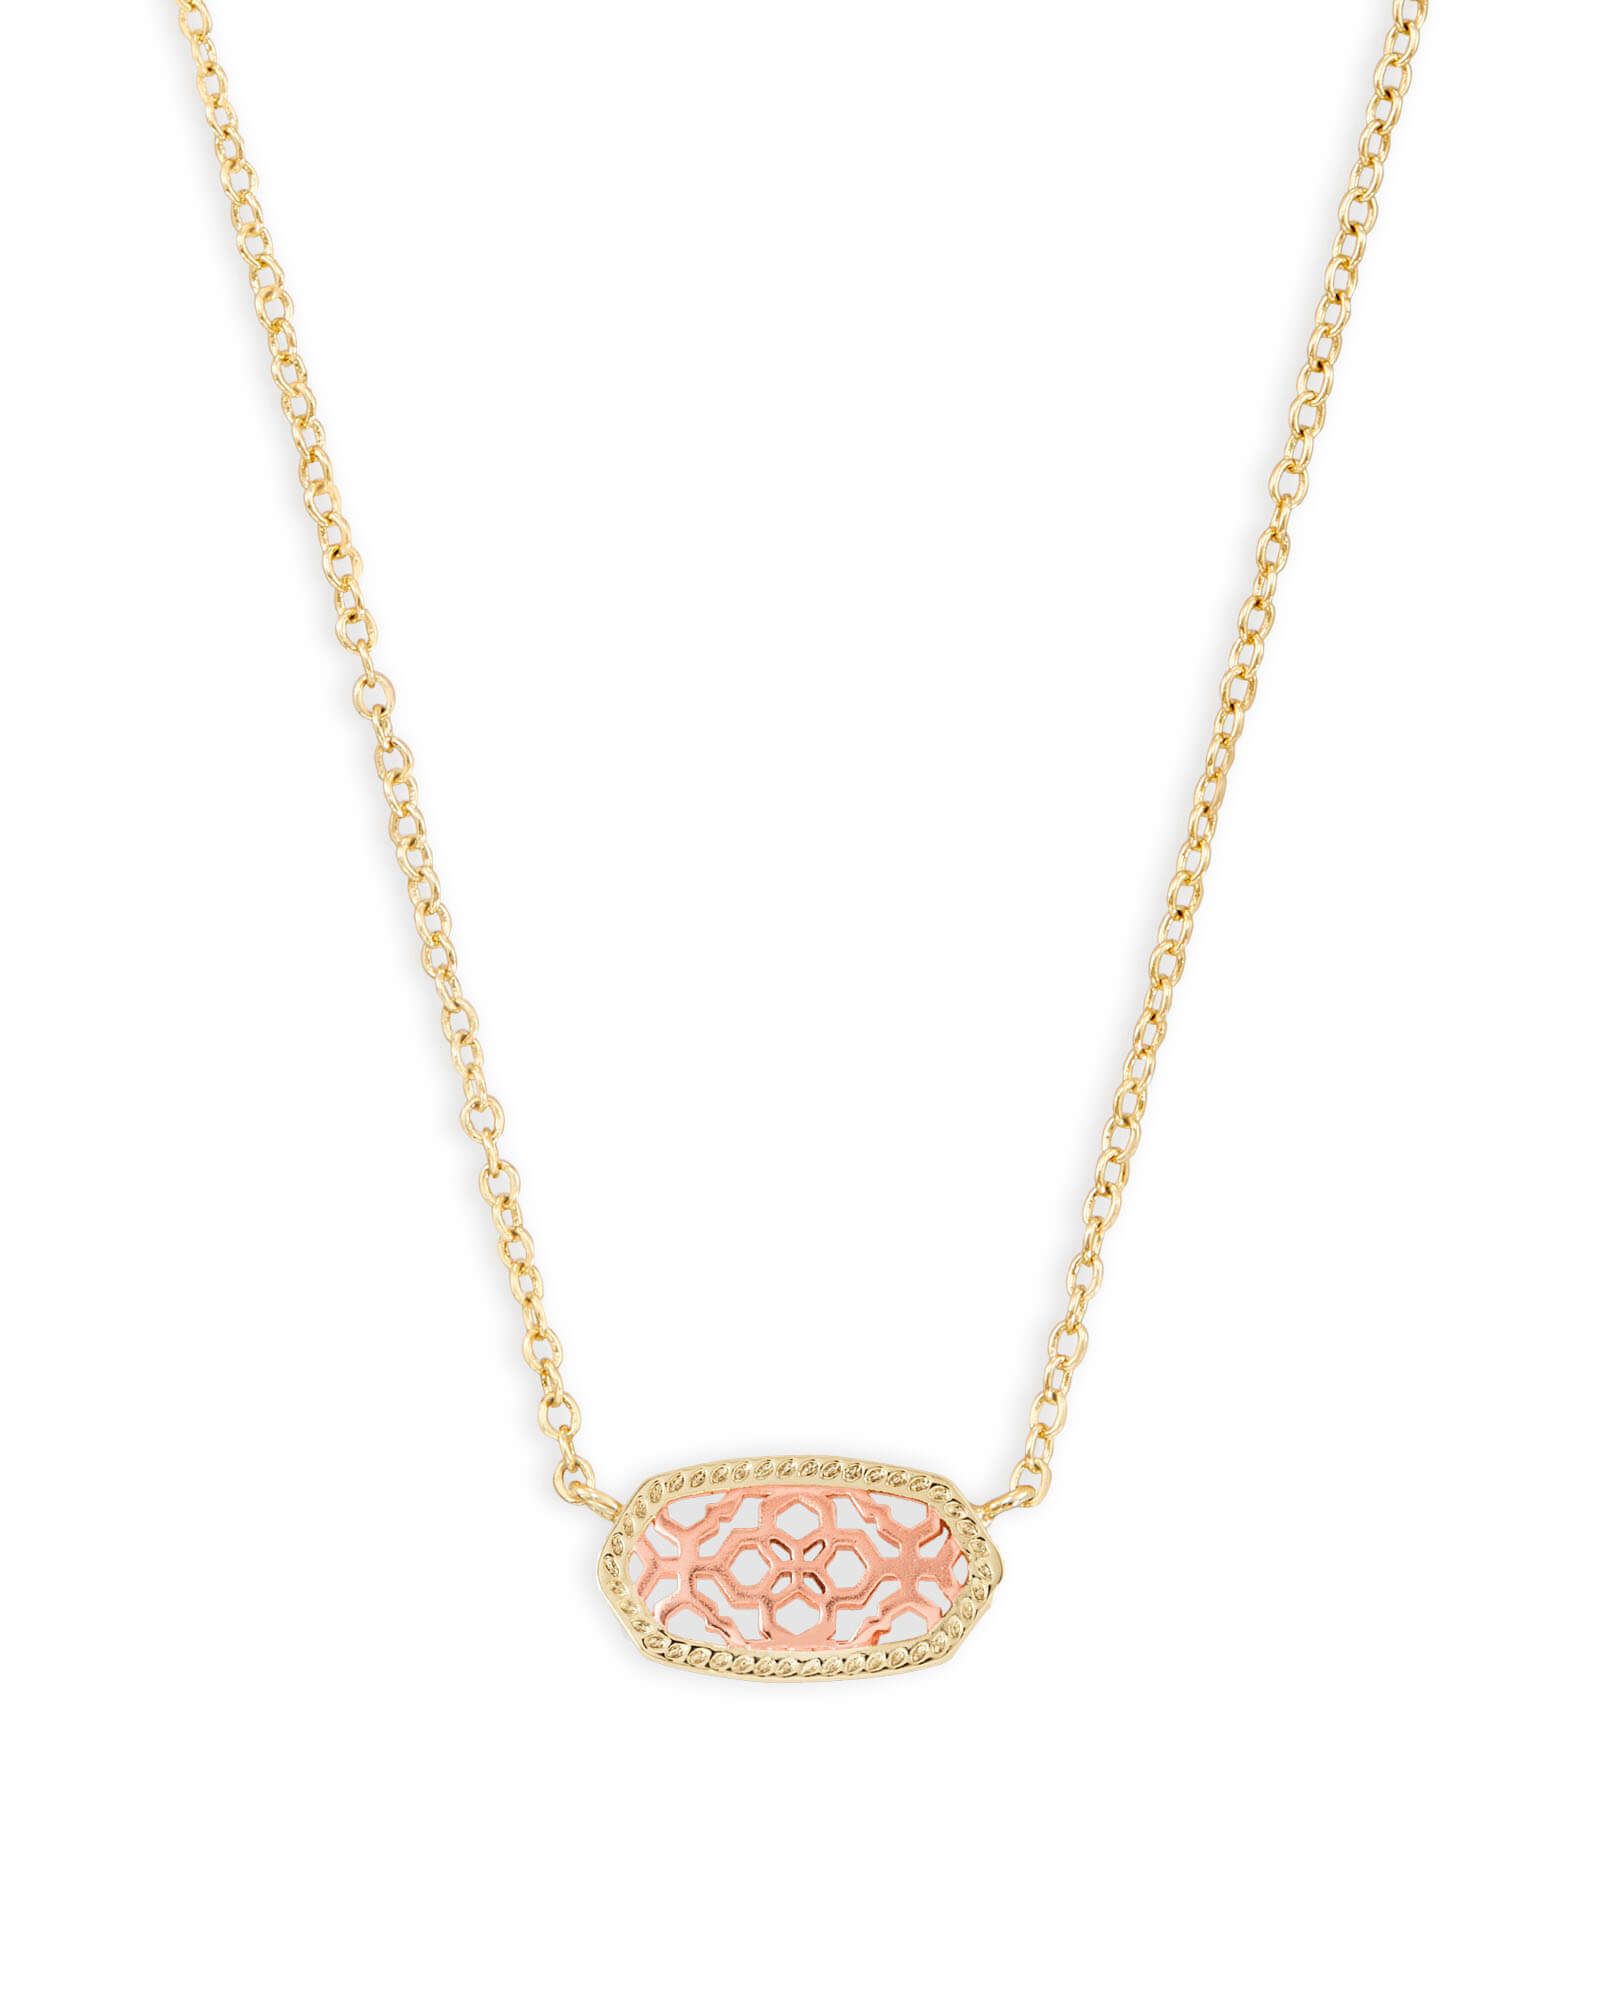 Elisa Gold Pendant Necklace in Rose Gold Filigree | Kendra Scott